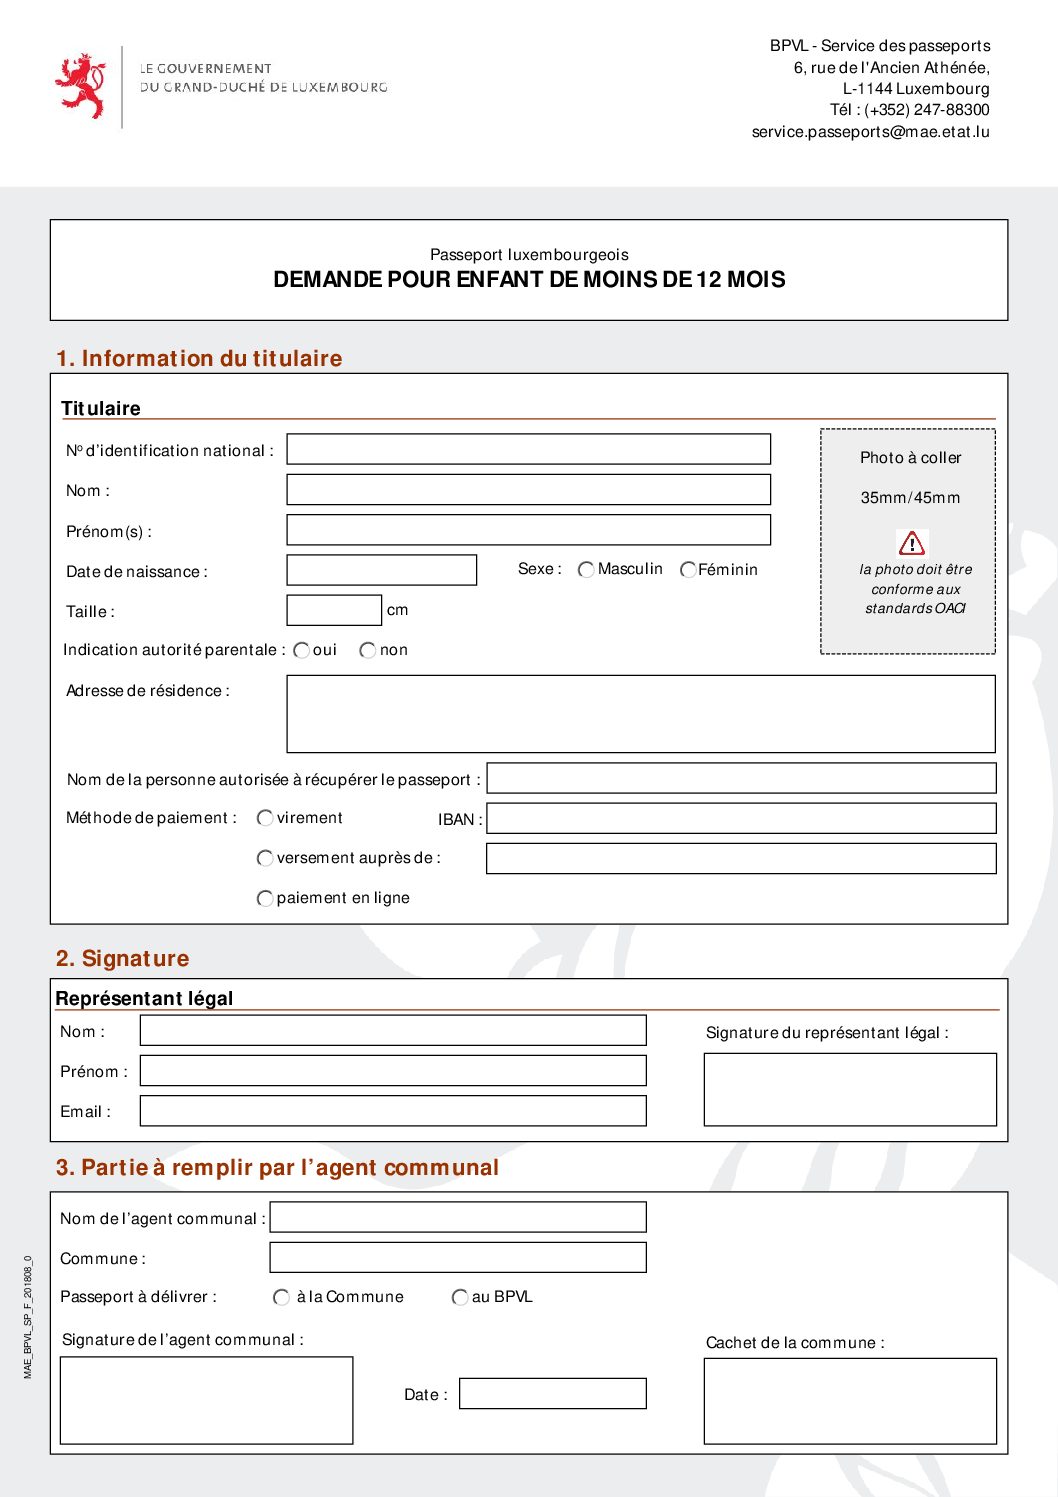 Citoyens - identité - Formulaire de demande de Passeport luxembourgeois_demande pour enfants de moins de 12mois